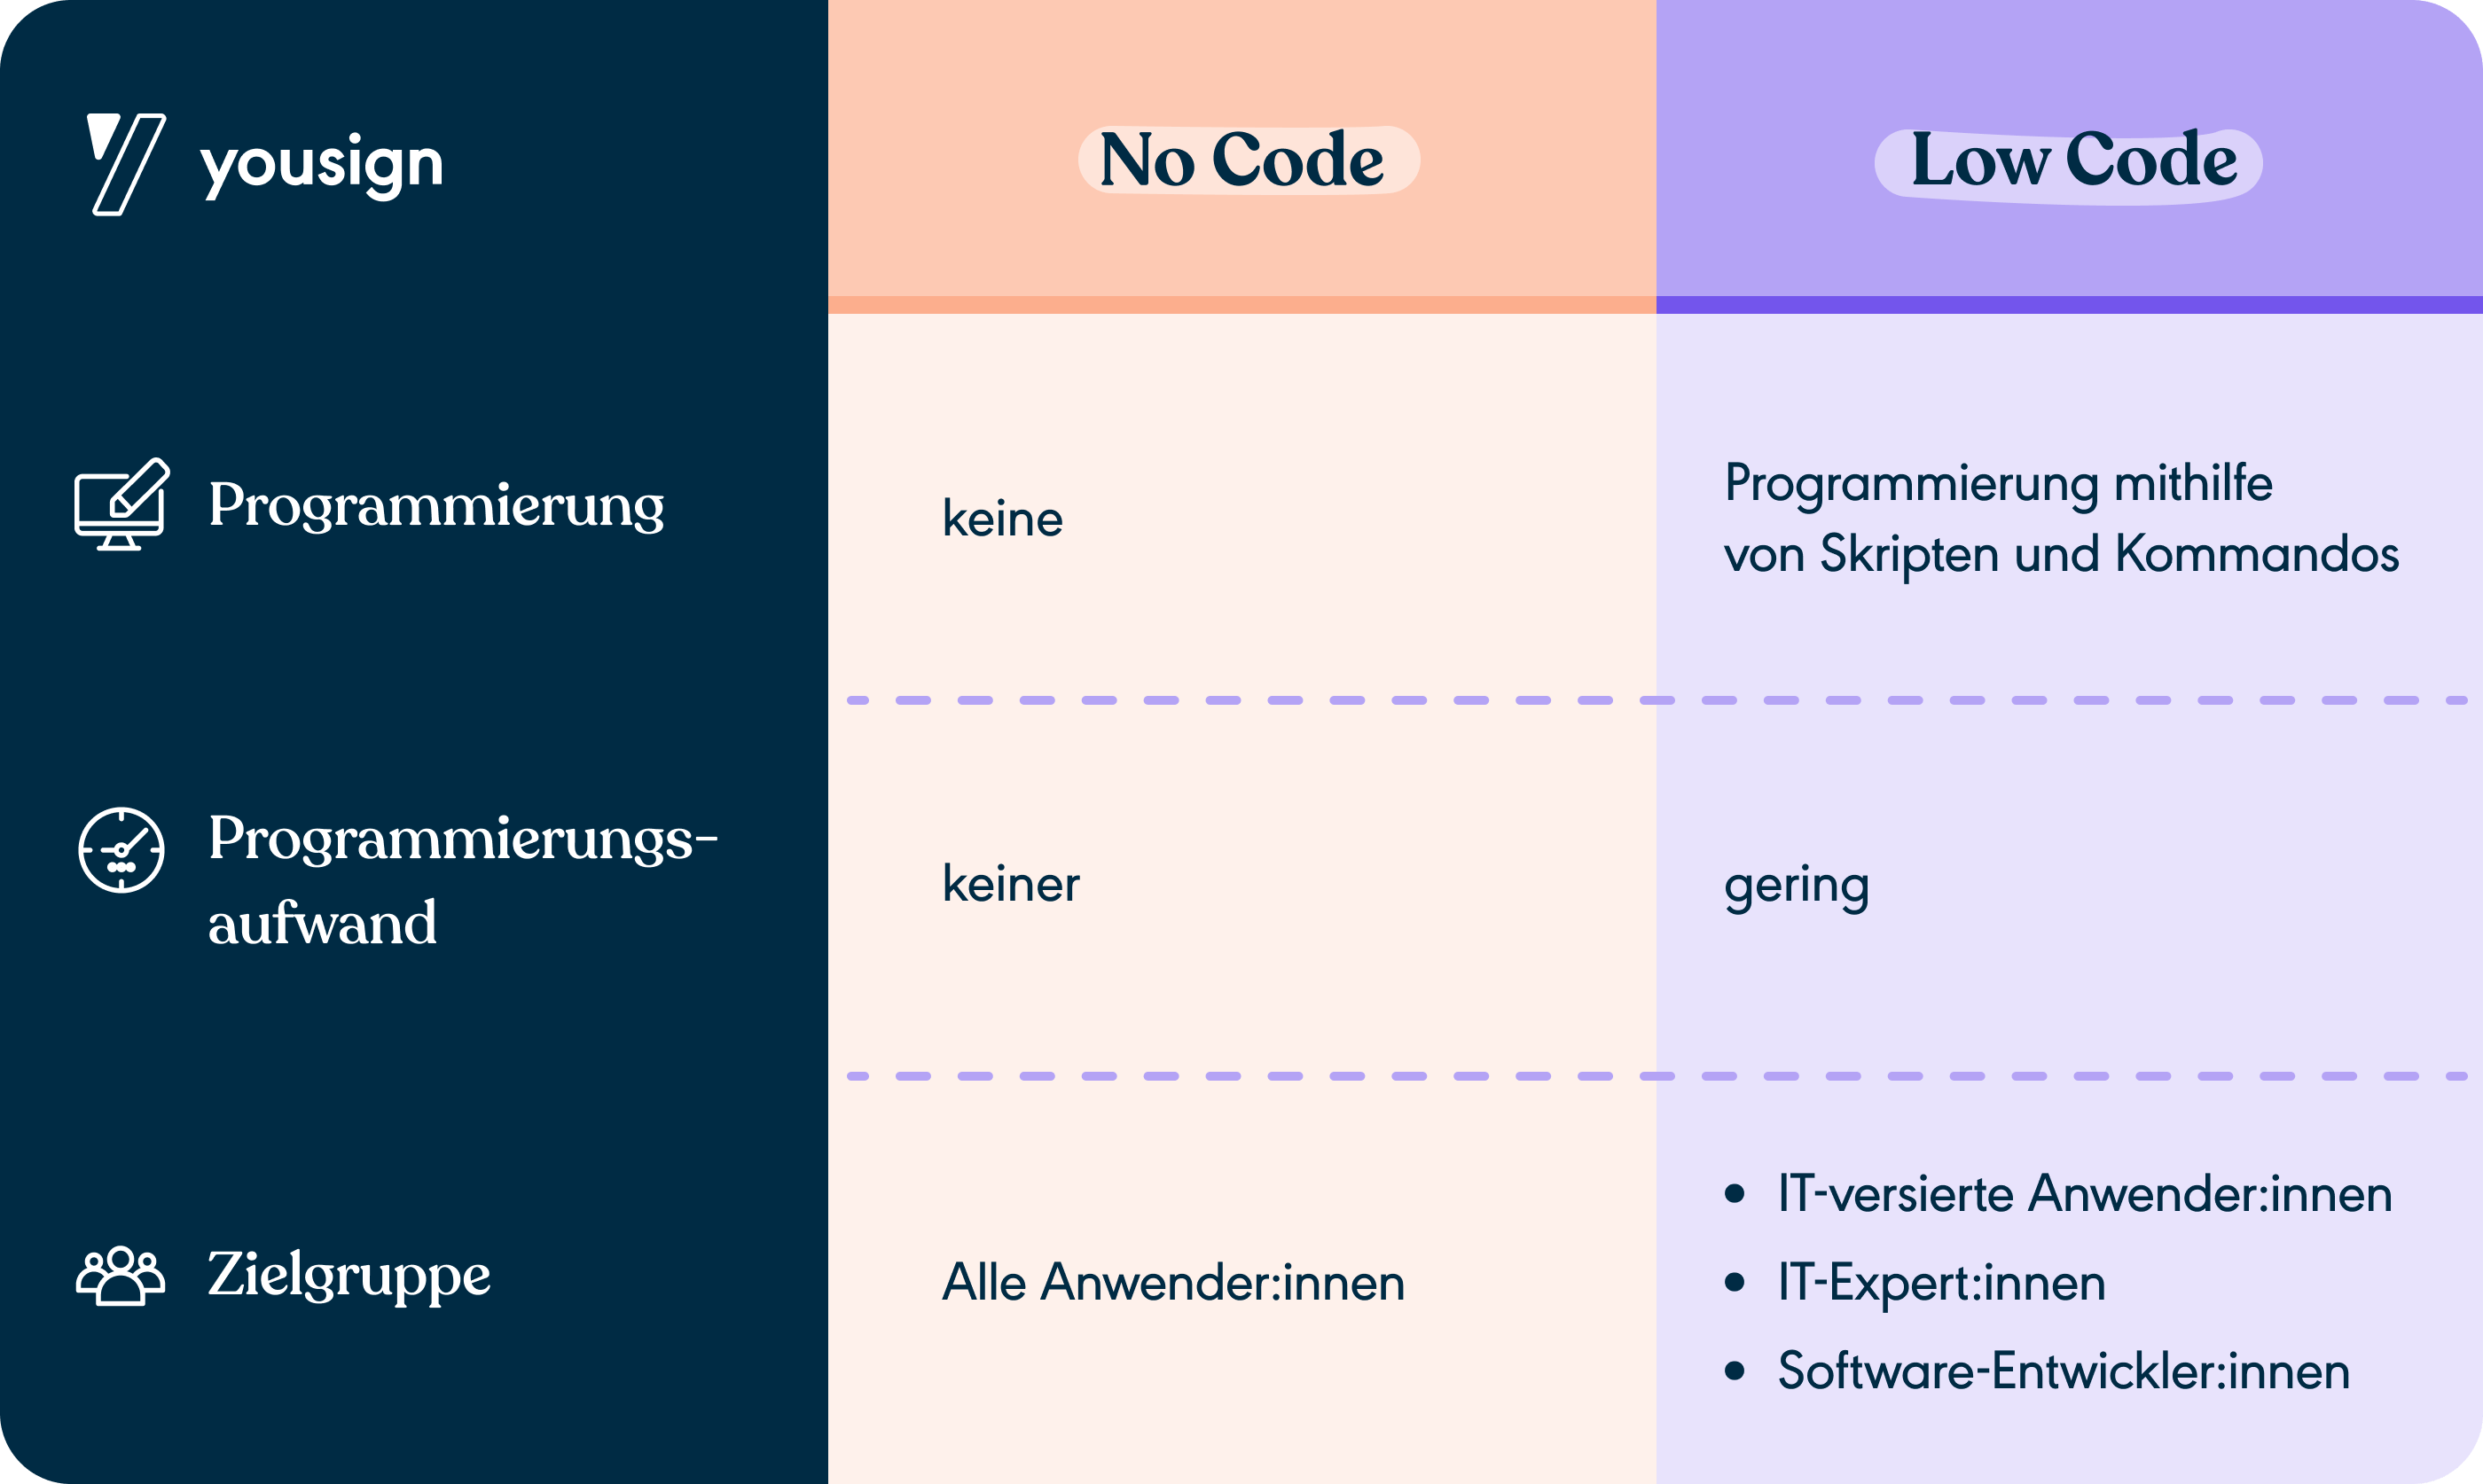 Unterschiede zwischen Low Code und No Code